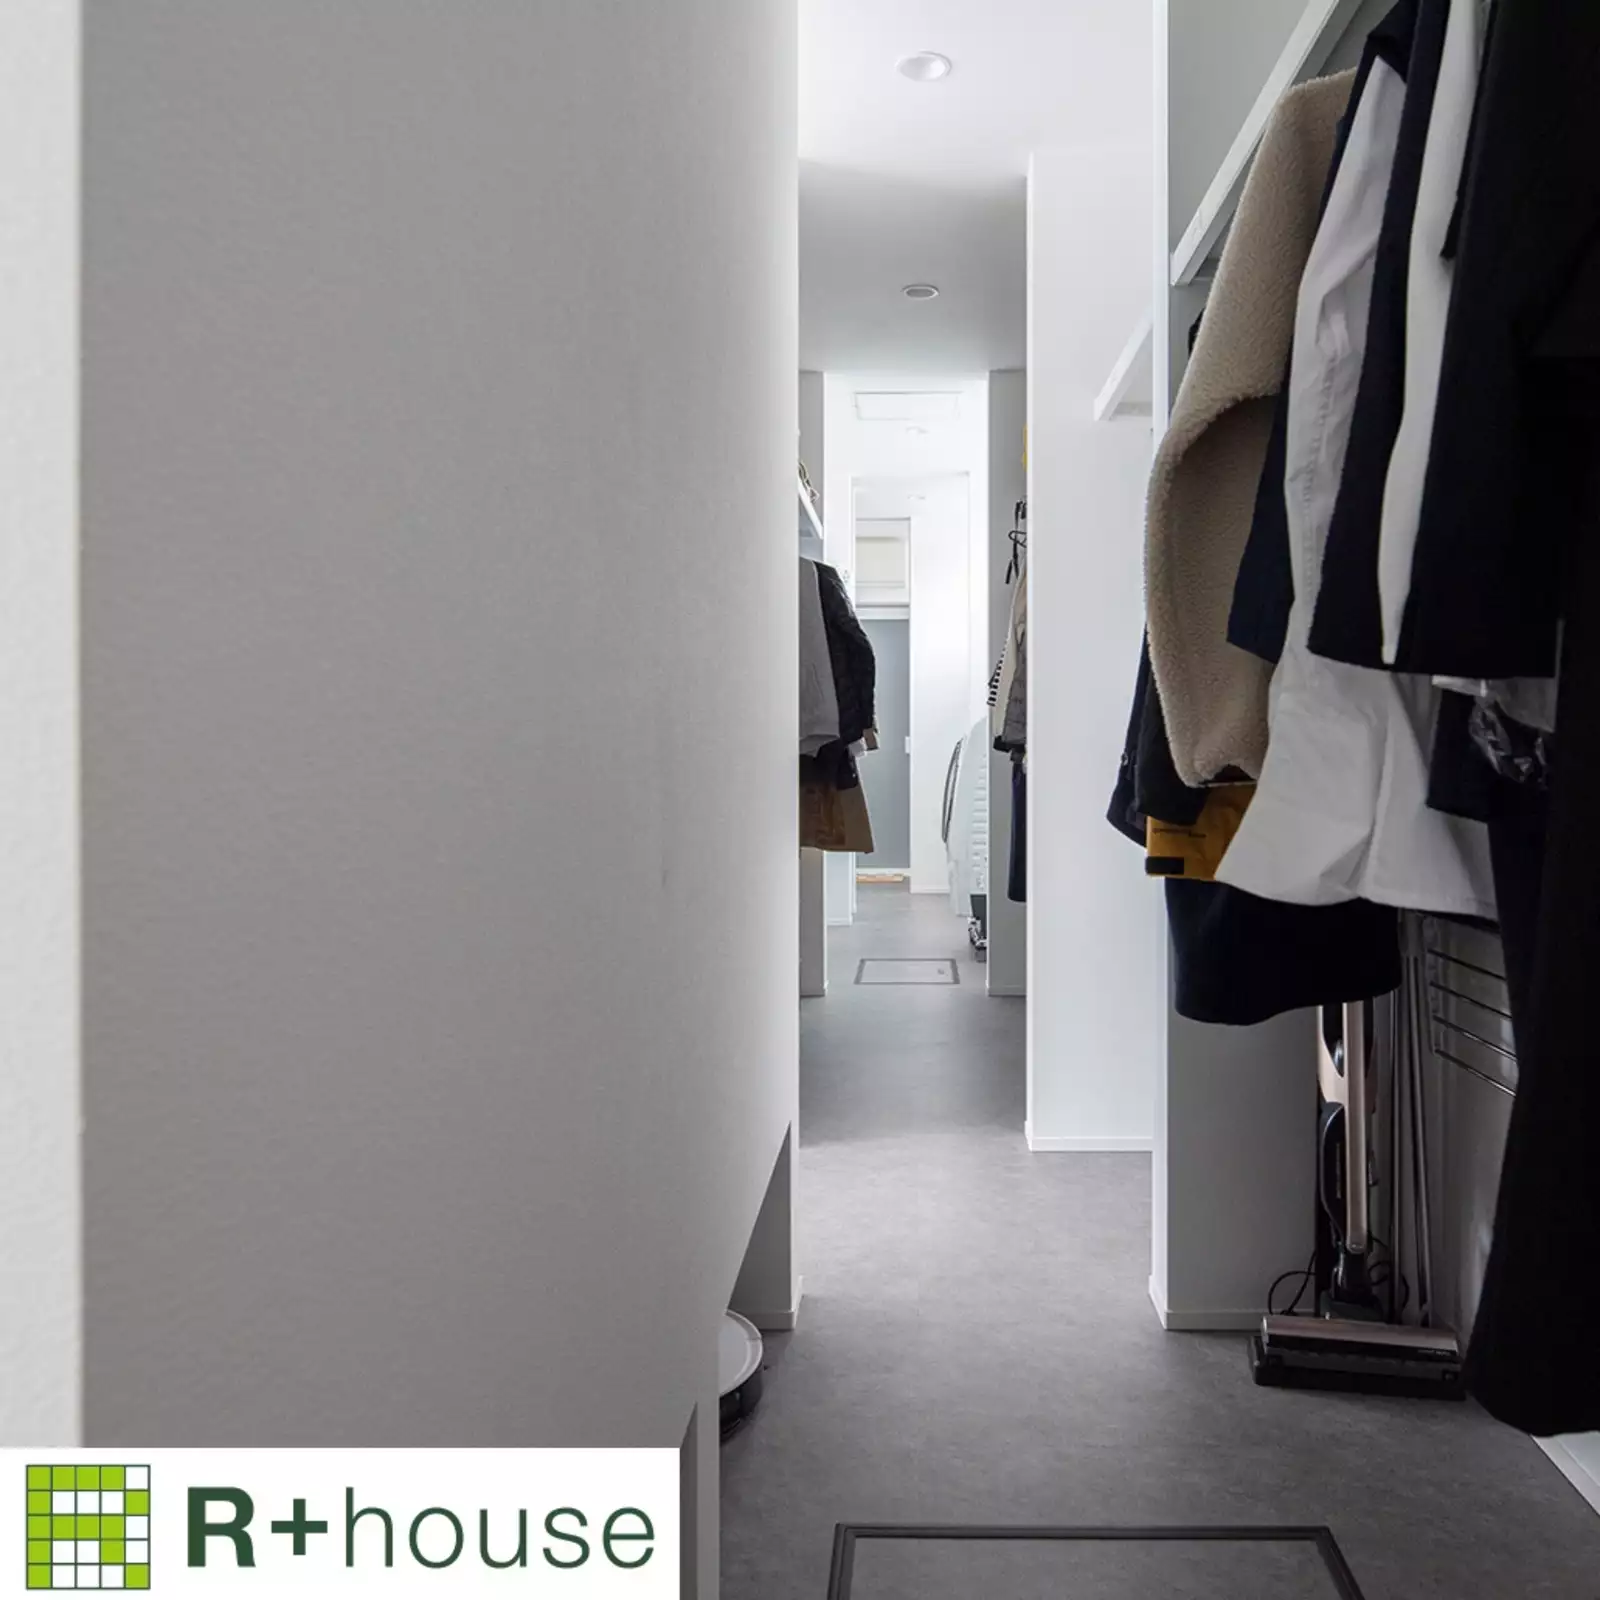 R+houseの物件のウォークインクローゼットの写真です。左側の壁の向こうはLDK、まっすぐ伸びた廊下は洗濯スペース、洗面浴室がある。